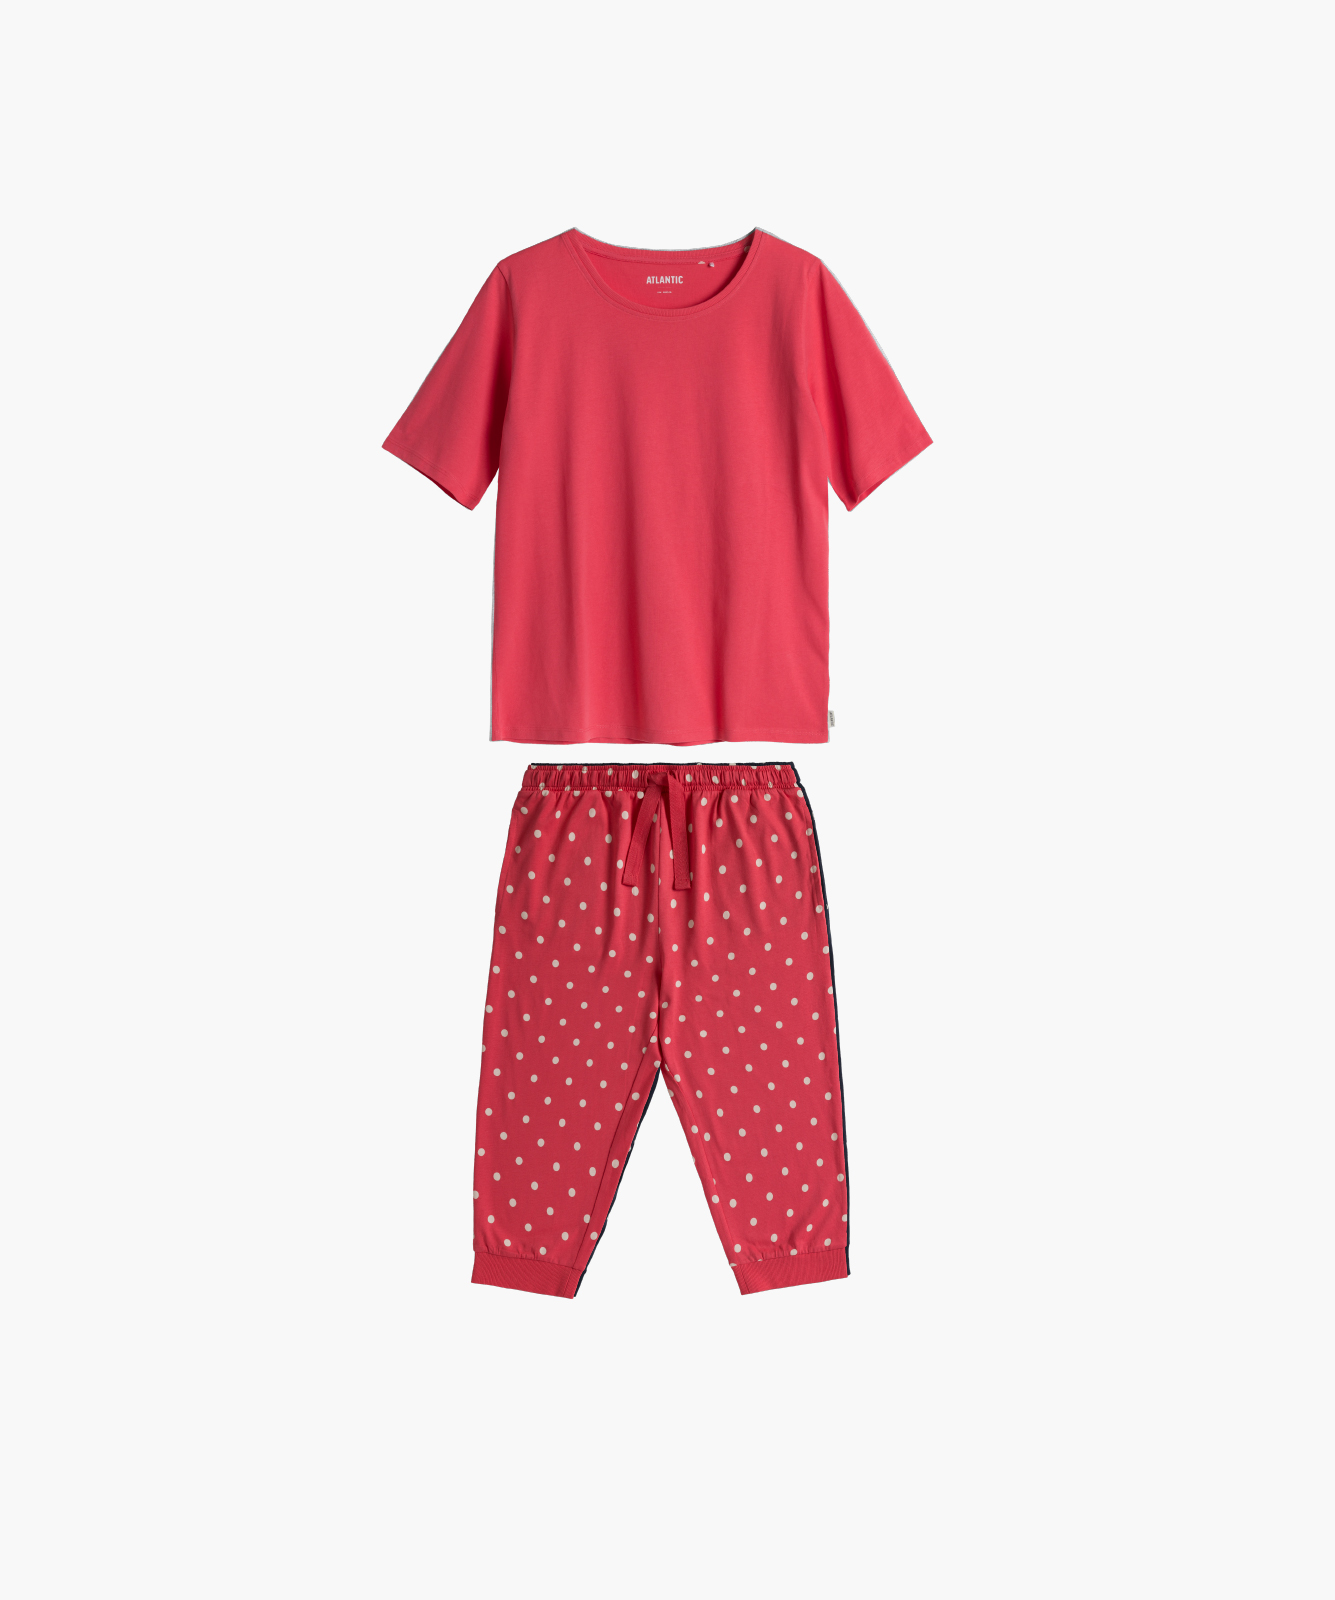 Dámské pyžamo ATLANTIC - červené